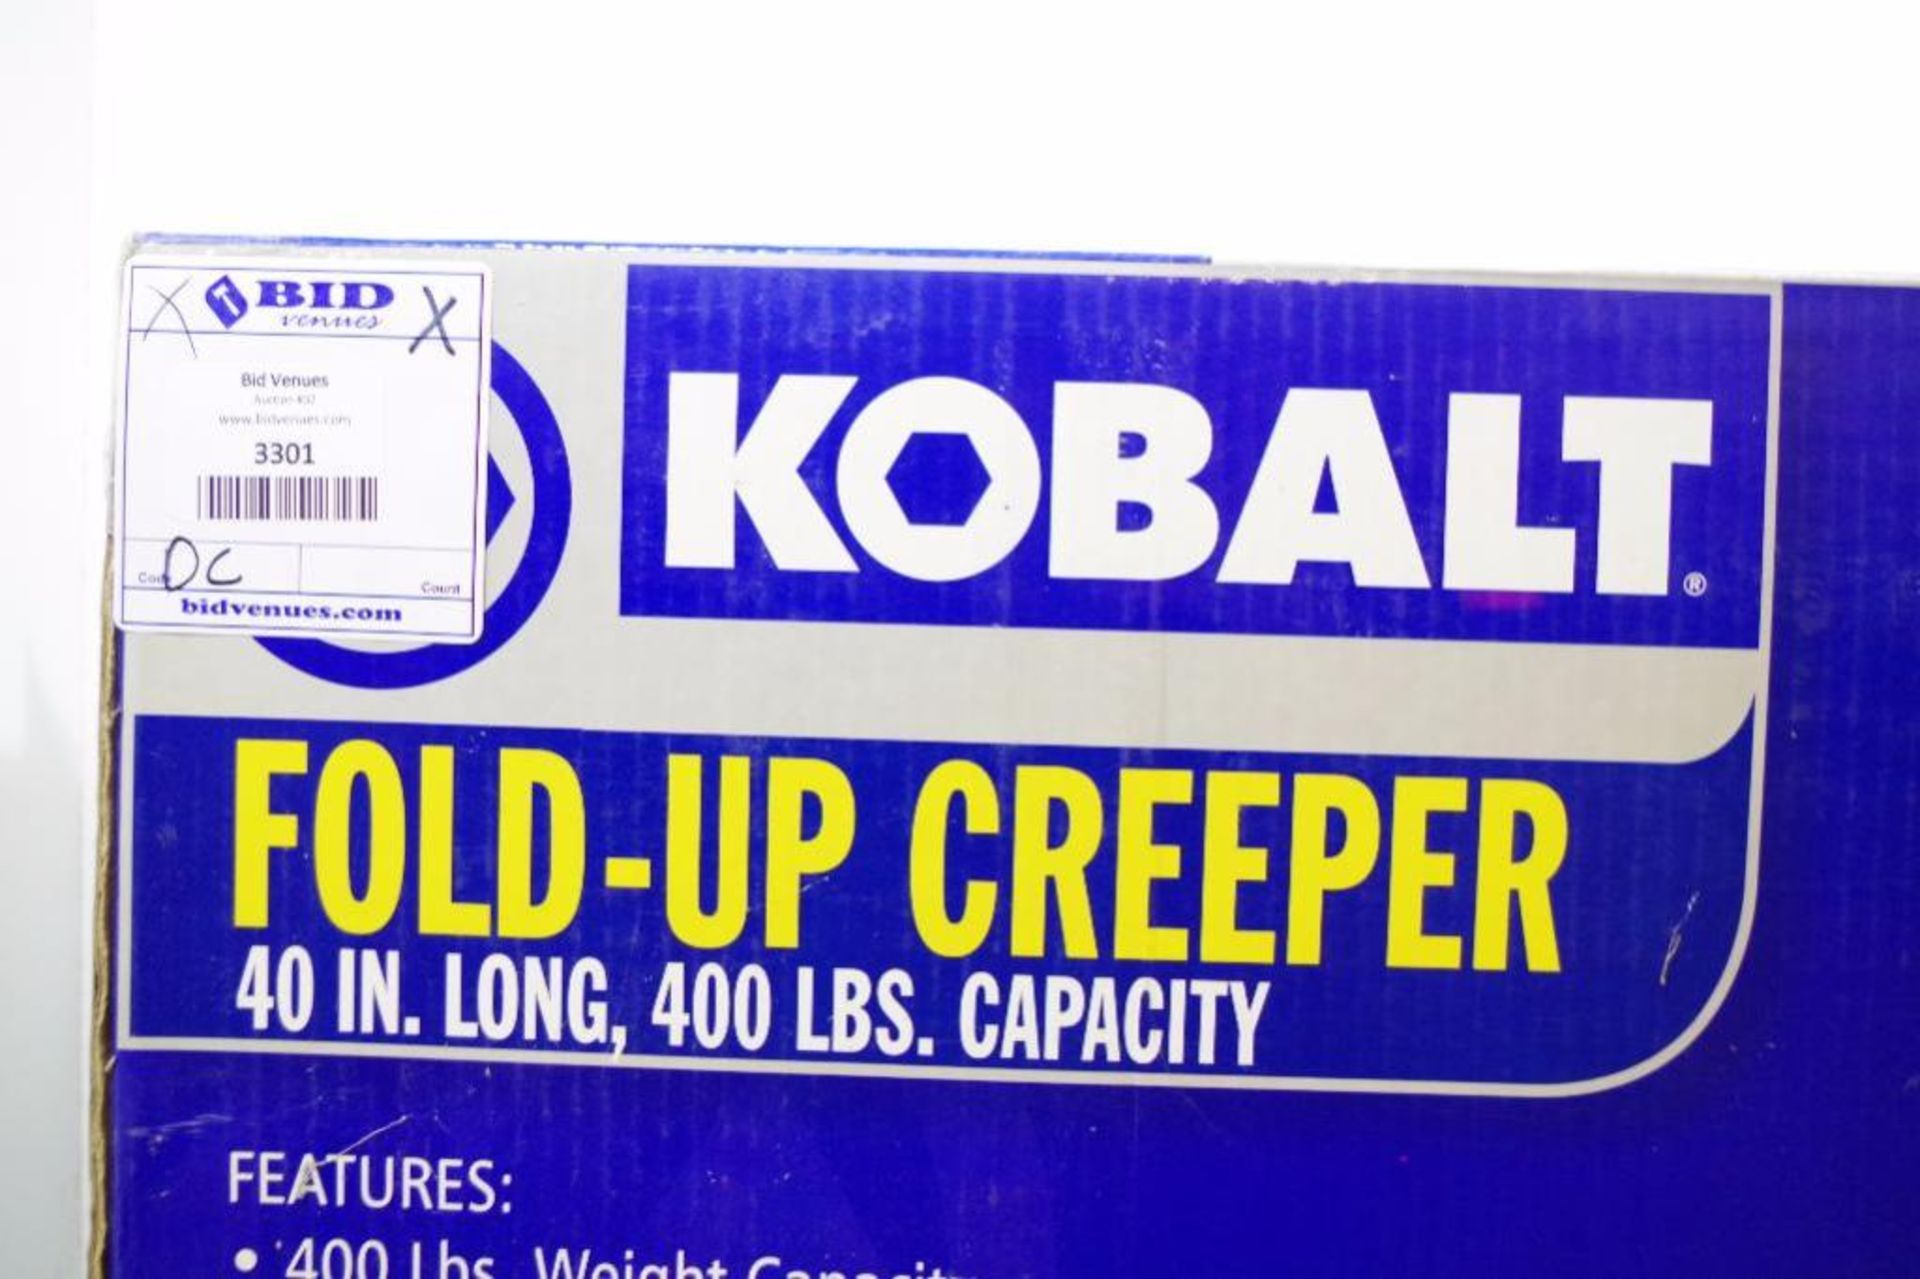 UNUSED KOBALT Fold-Up Creeper, 40"L, 400 Lbs. Capacity, M/N 221981 - Image 2 of 2